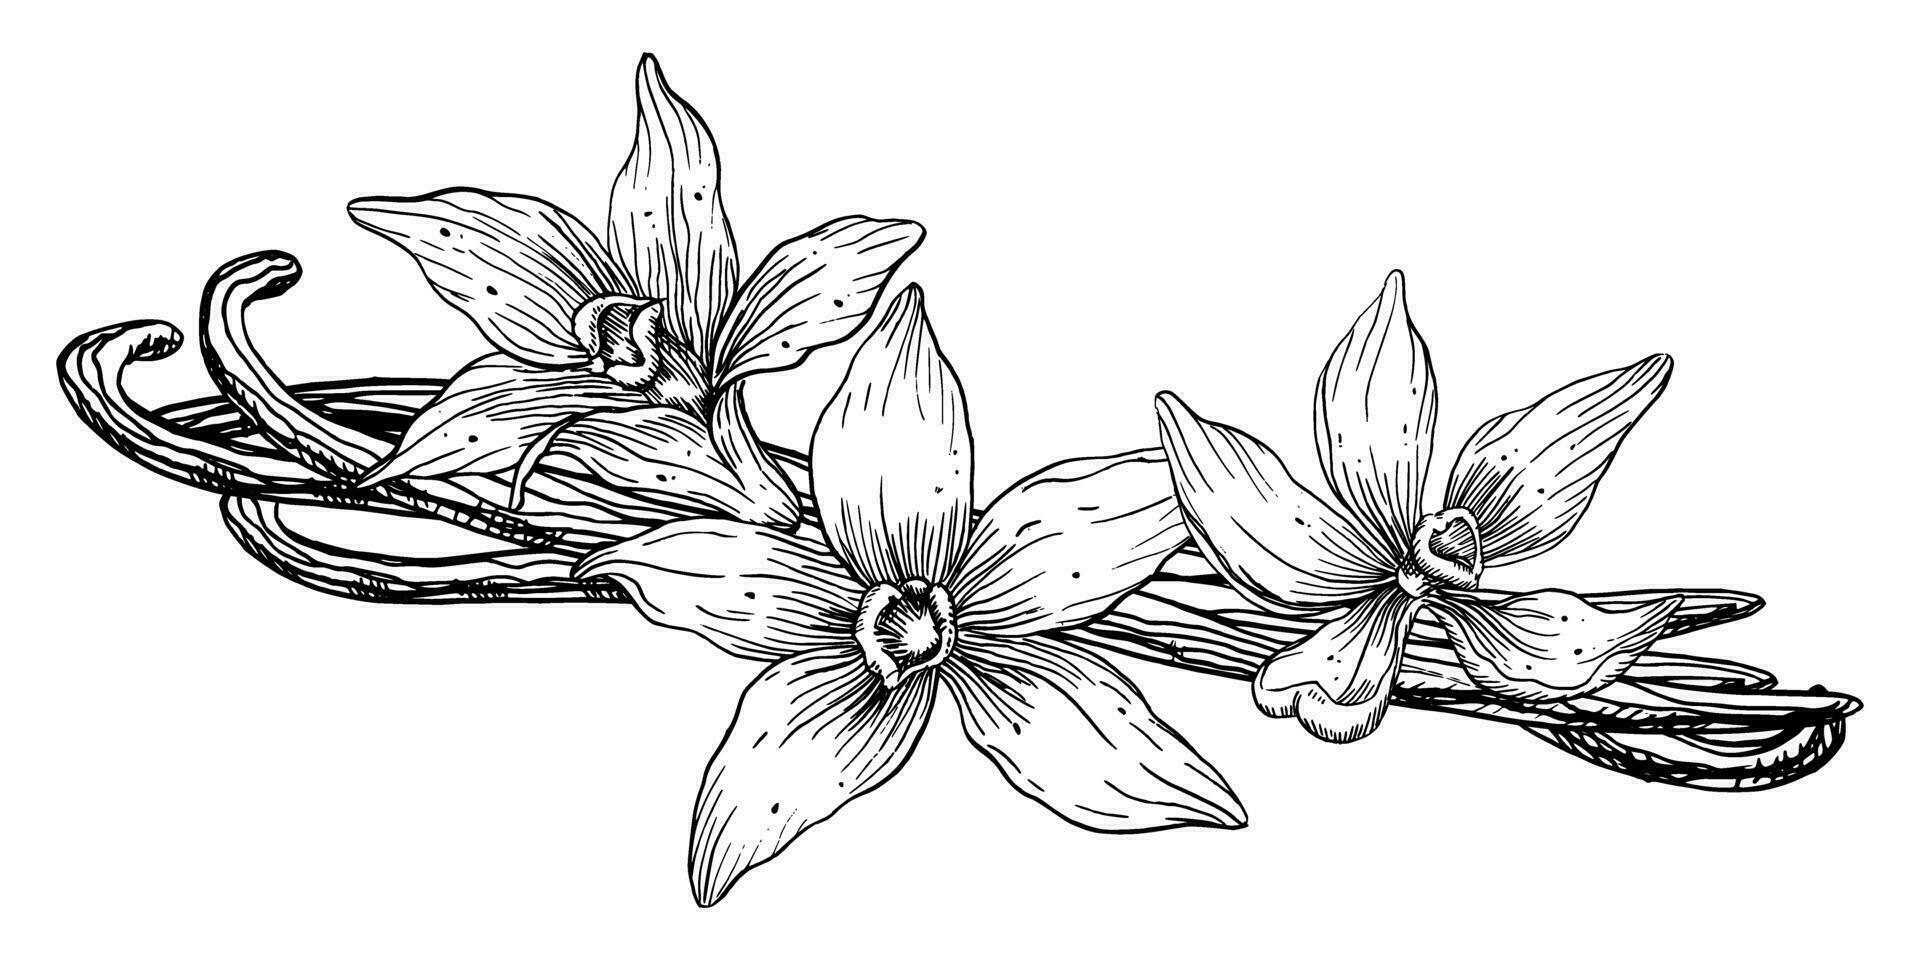 vainilla flor con palos vector mano dibujado ilustración de orquídea flor y vainas en blanco aislado antecedentes. contorno dibujo de especia para Cocinando o aroma aceites negro bosquejo en línea Arte estilo.